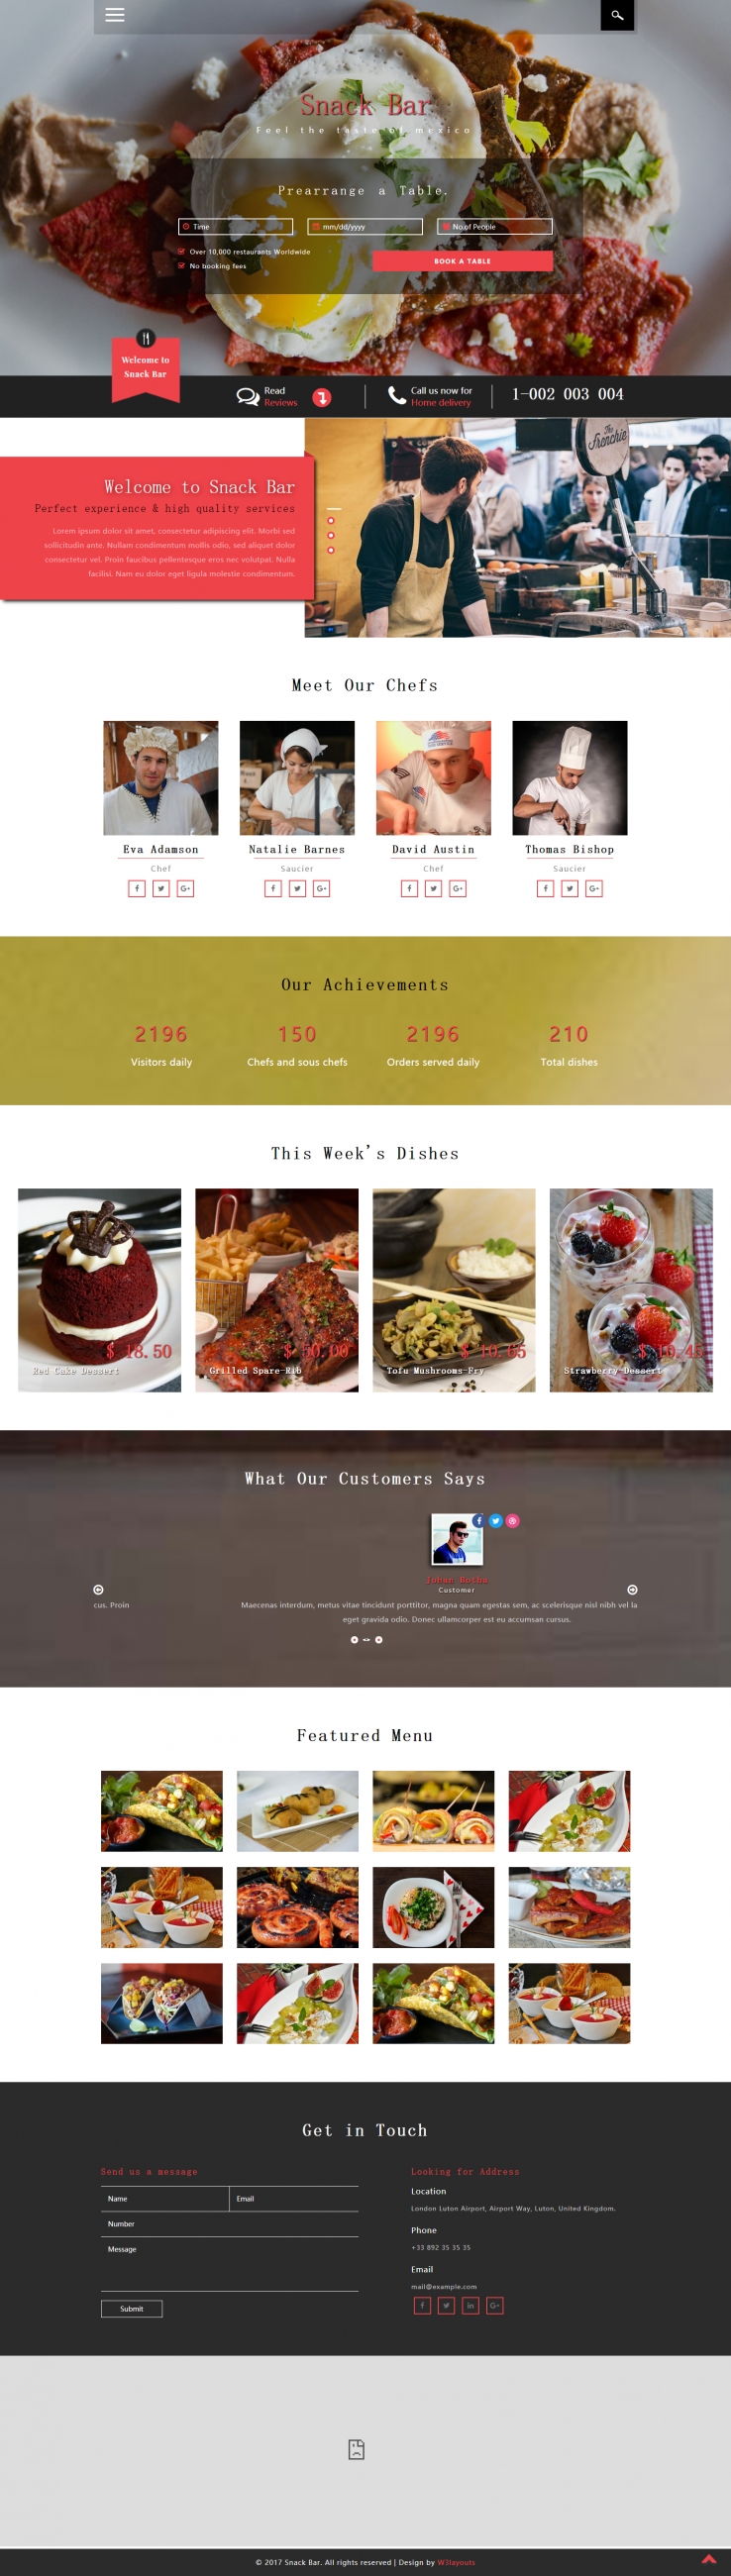 红色简洁风格的餐饮服务菜单整站网站源码下载